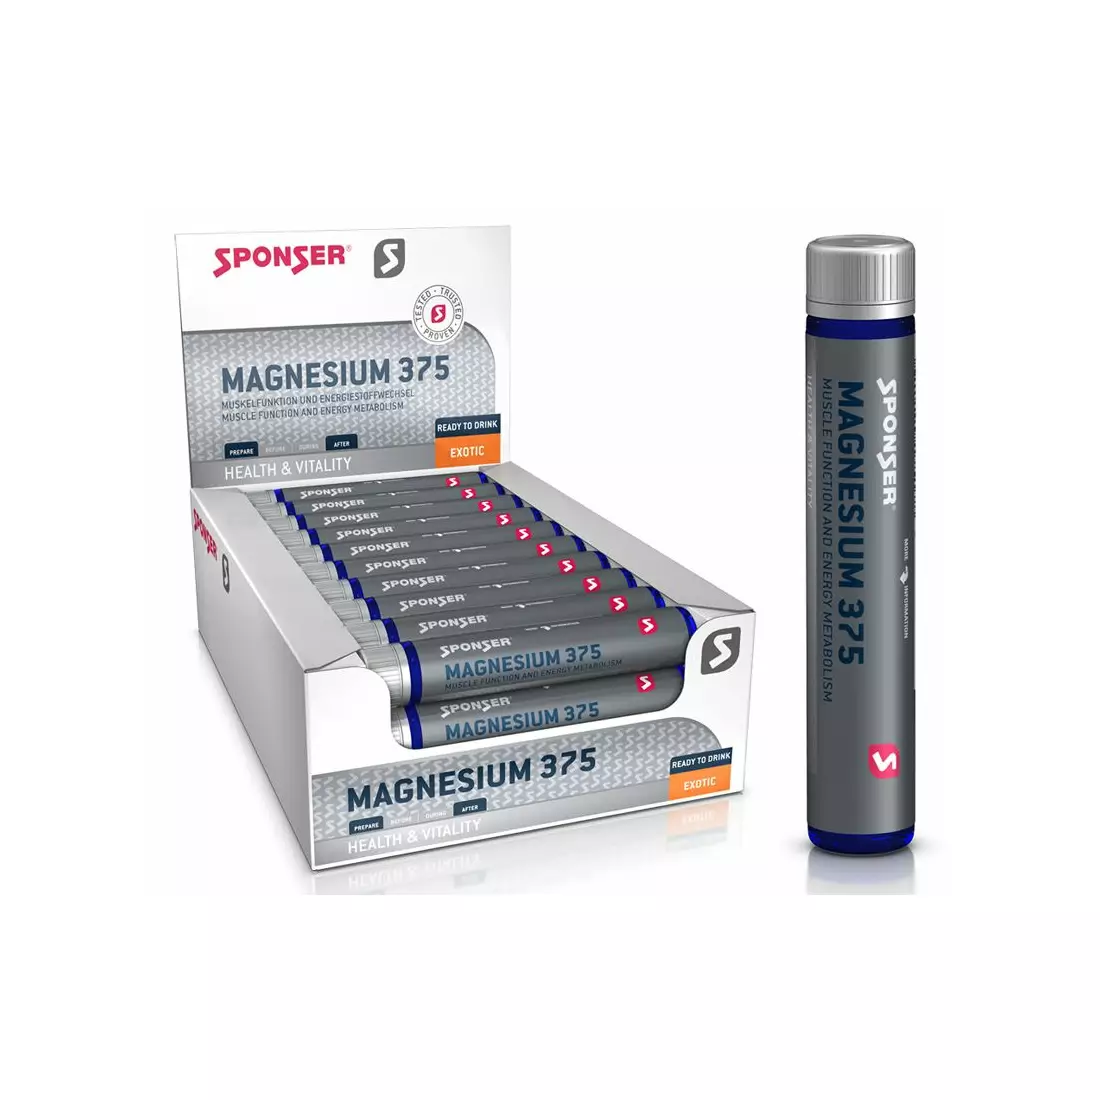 Magnesium SPONSER MAGNESIUM 375 in ampoules (box 30 ampoules x 25g)